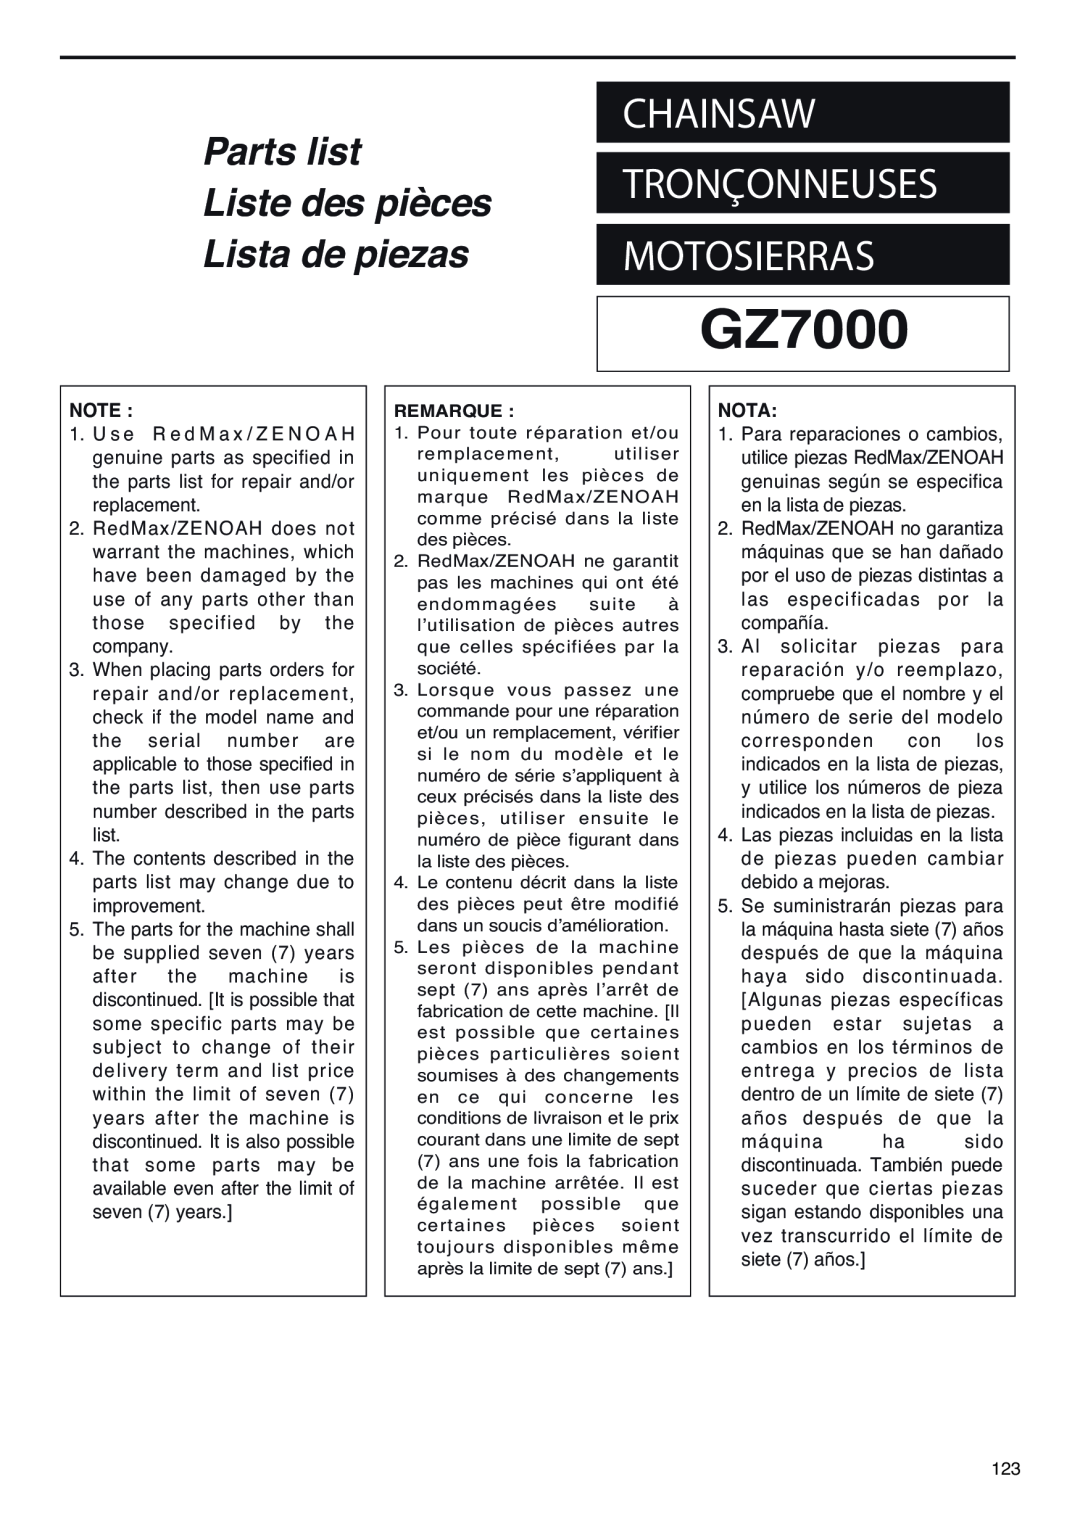 RedMax GZ7000 manual Chainsaw, Motosierras, Tronçonneuses, Parts list, Liste des pièces, Lista de piezas, Nota 